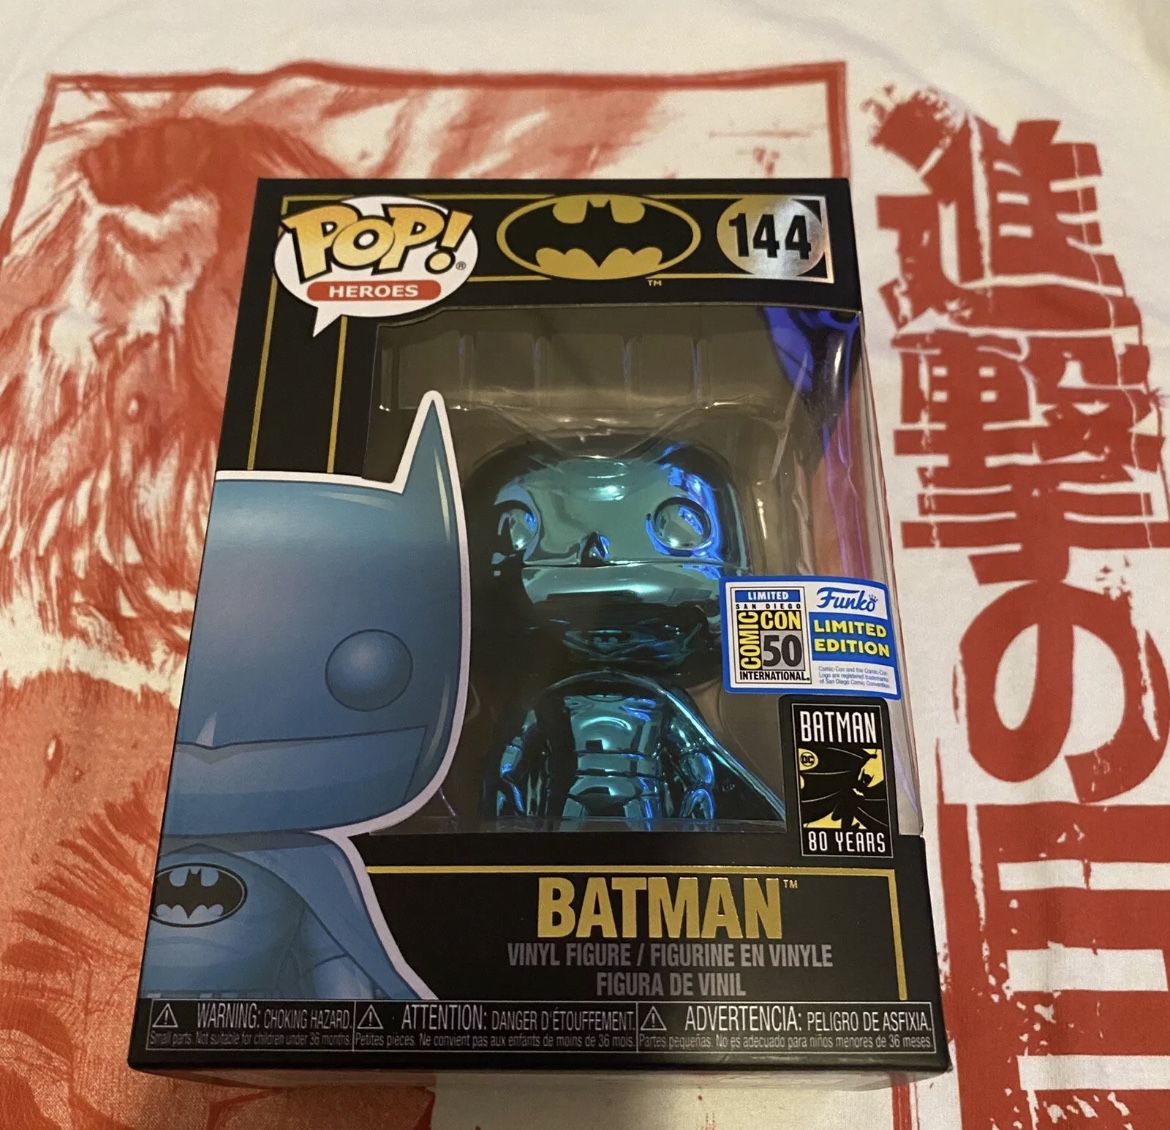 Batman (Blue Chrome) [SDCC] Pop Vinyl Pop Heroes